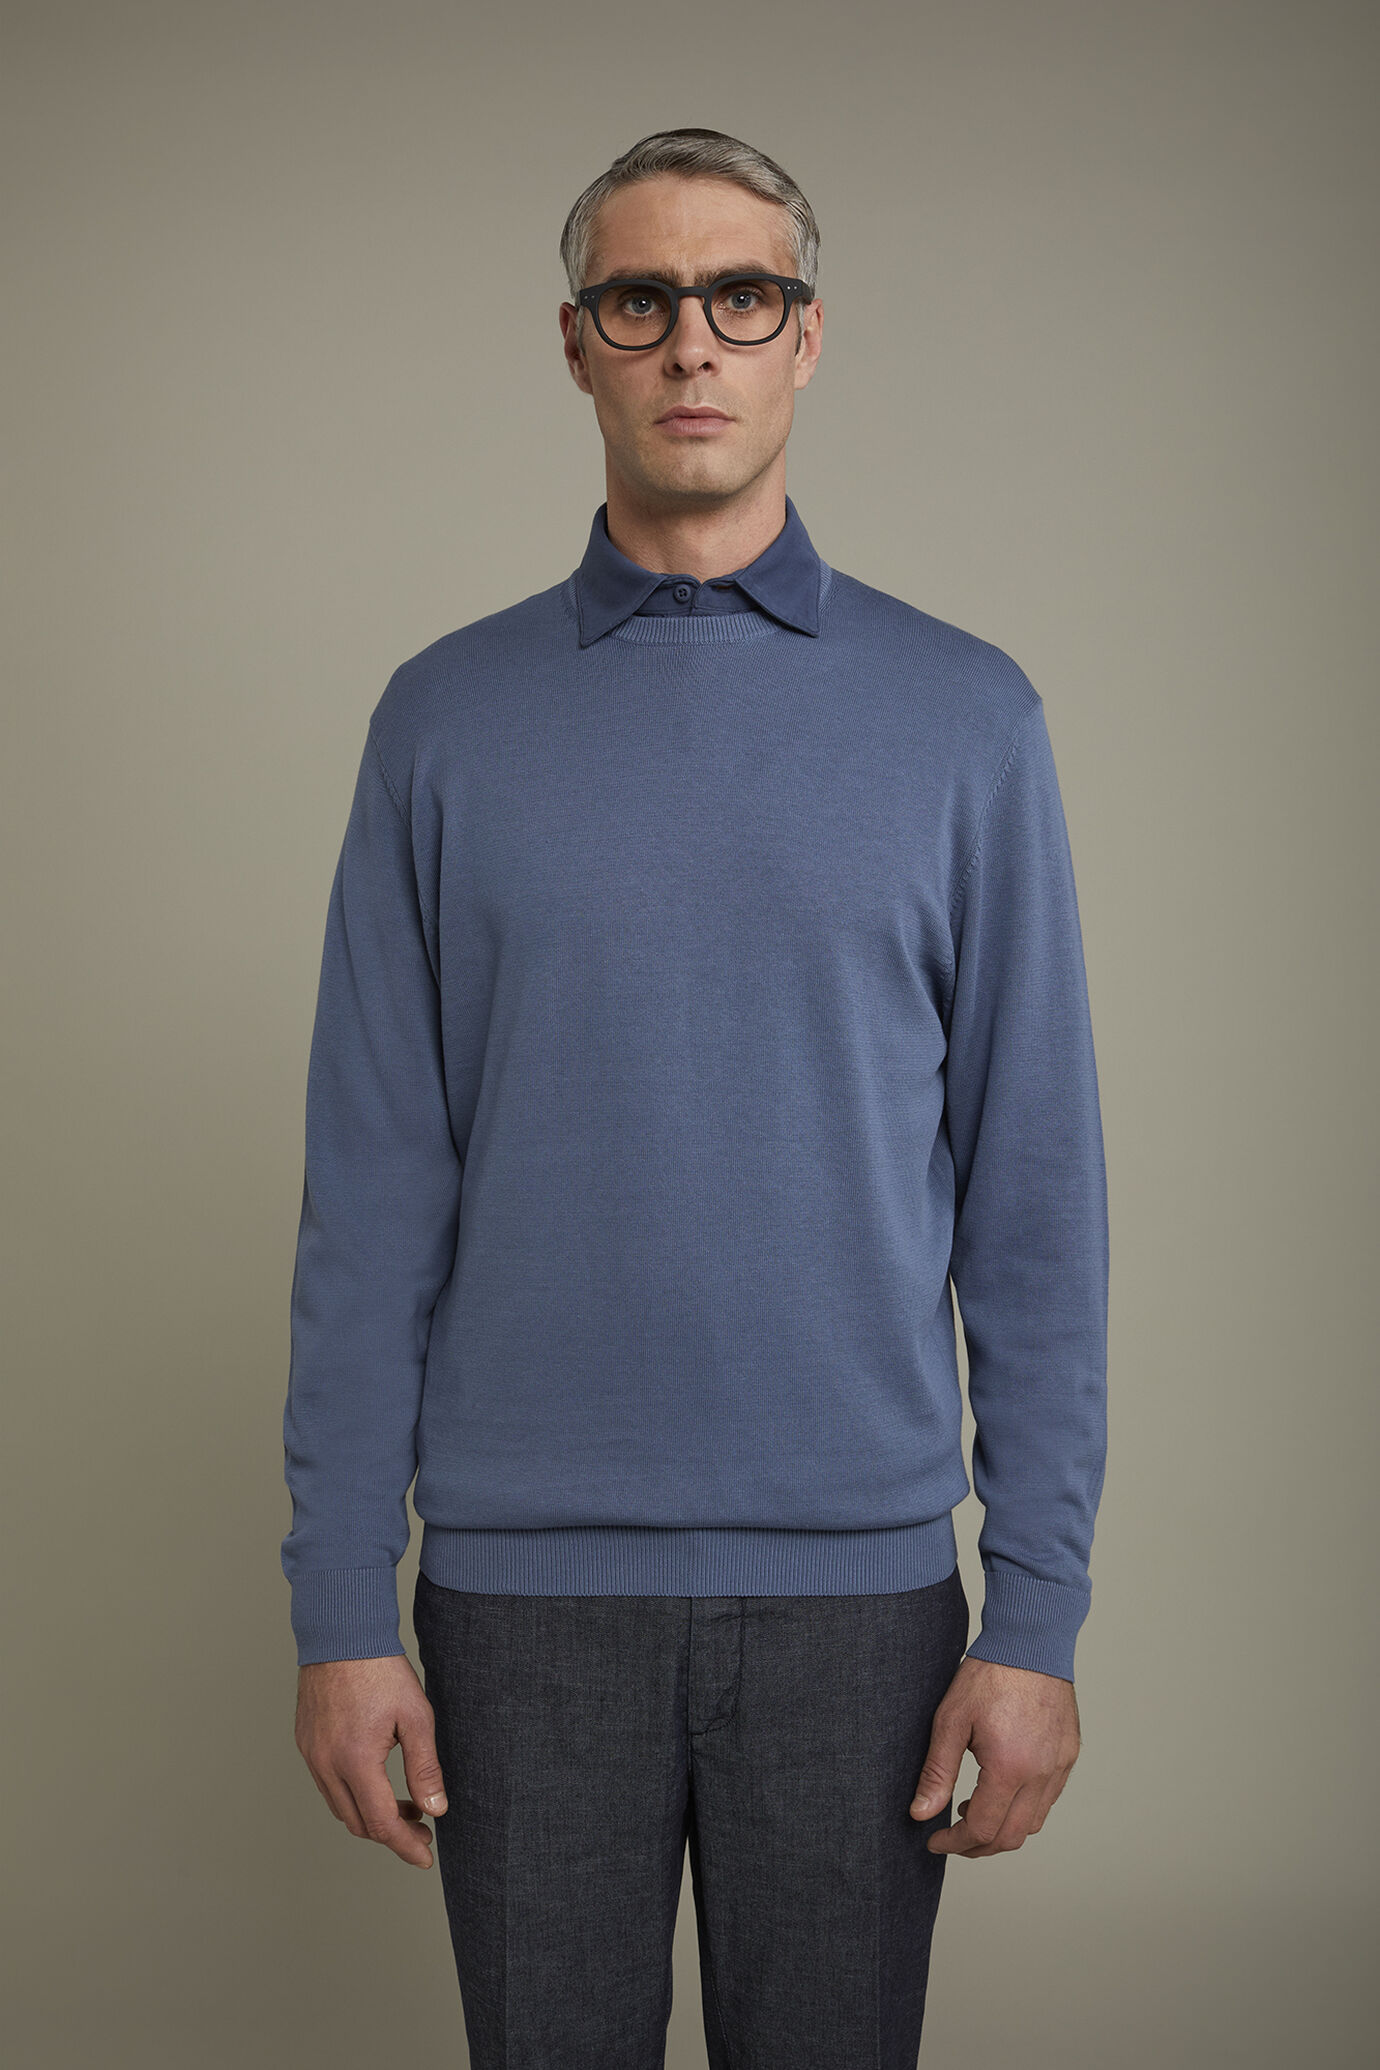 Men's Round neck sweater 100% cotton regular fit